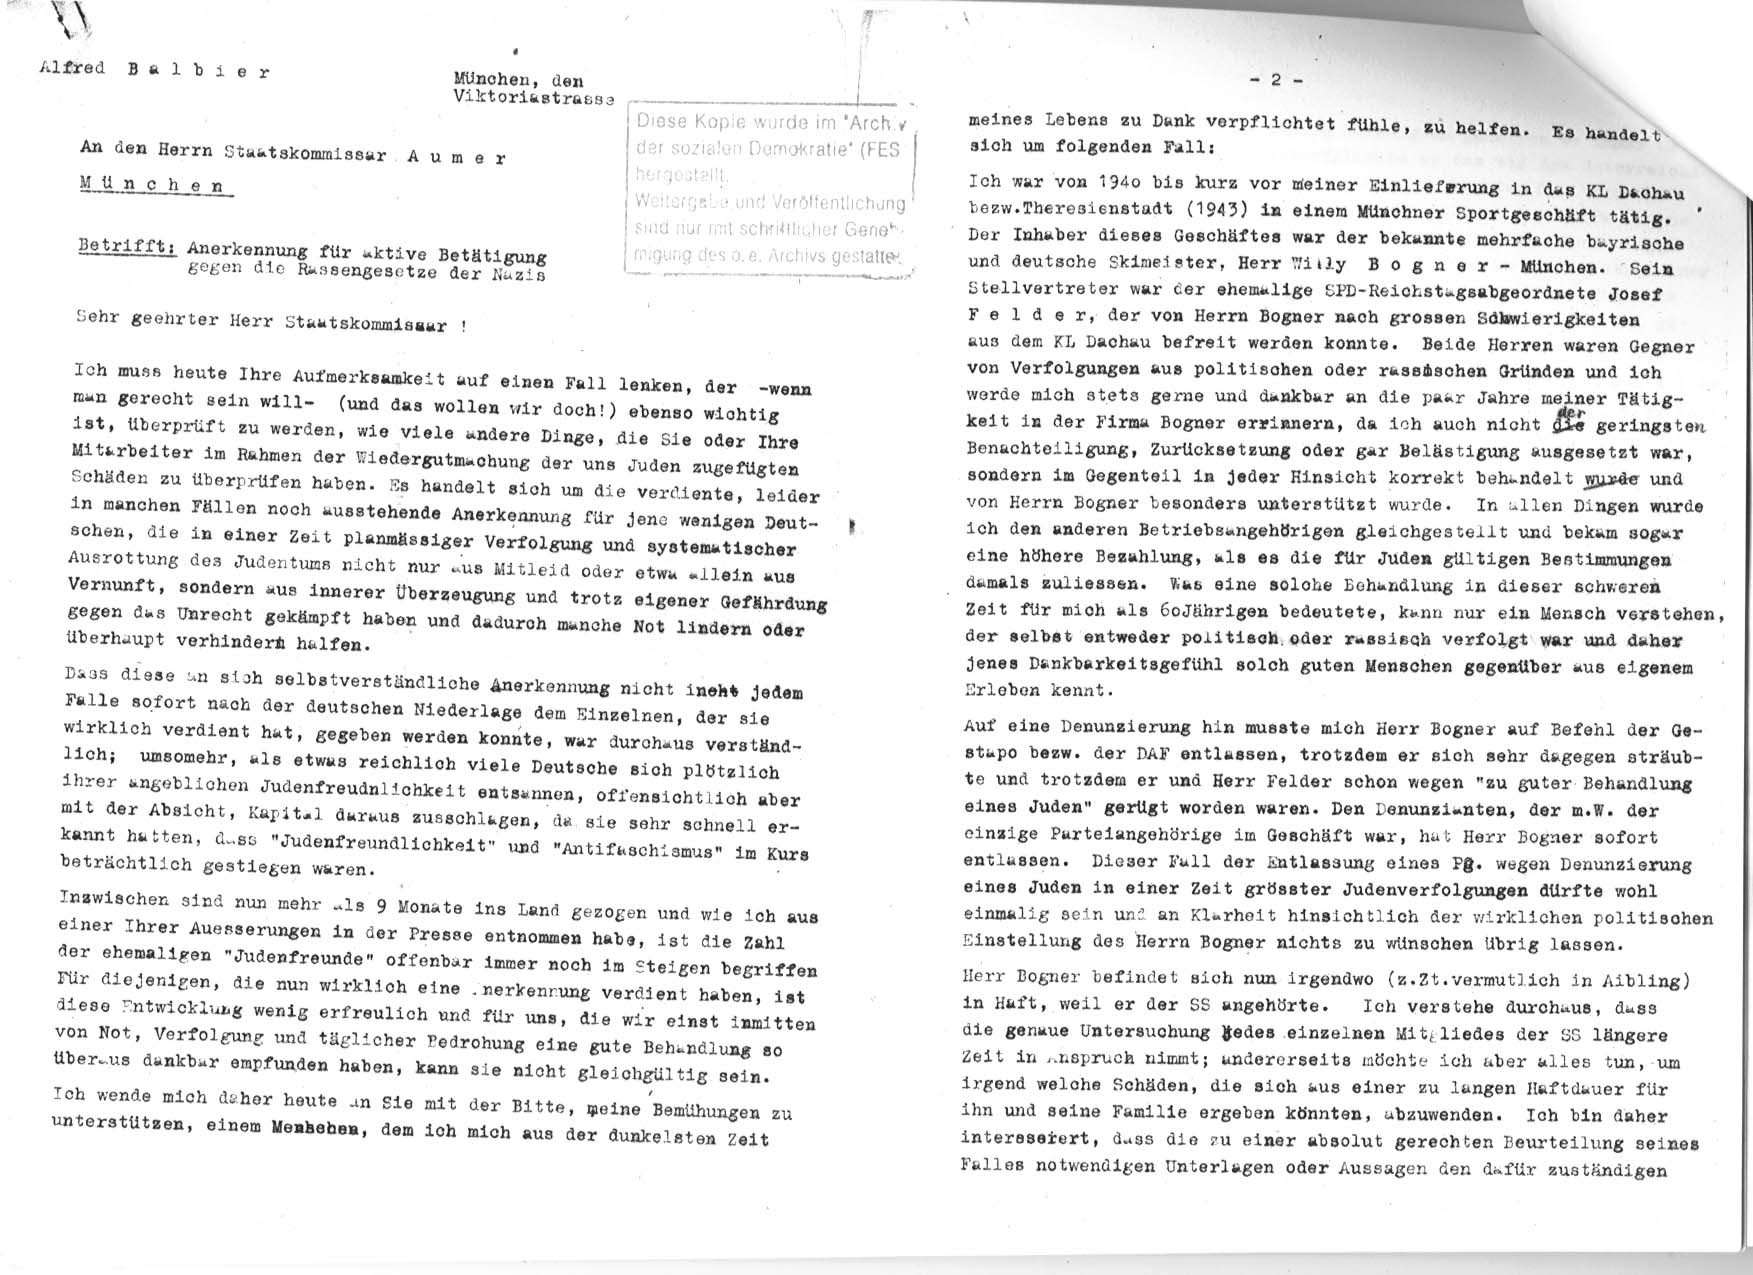 Brief Alfred Balbiers an Staatskommissar Aumer, Teil 1: Anerkennung fr aktive Bettigung Willy Bogners gegen die Rassengesetze der Nazis